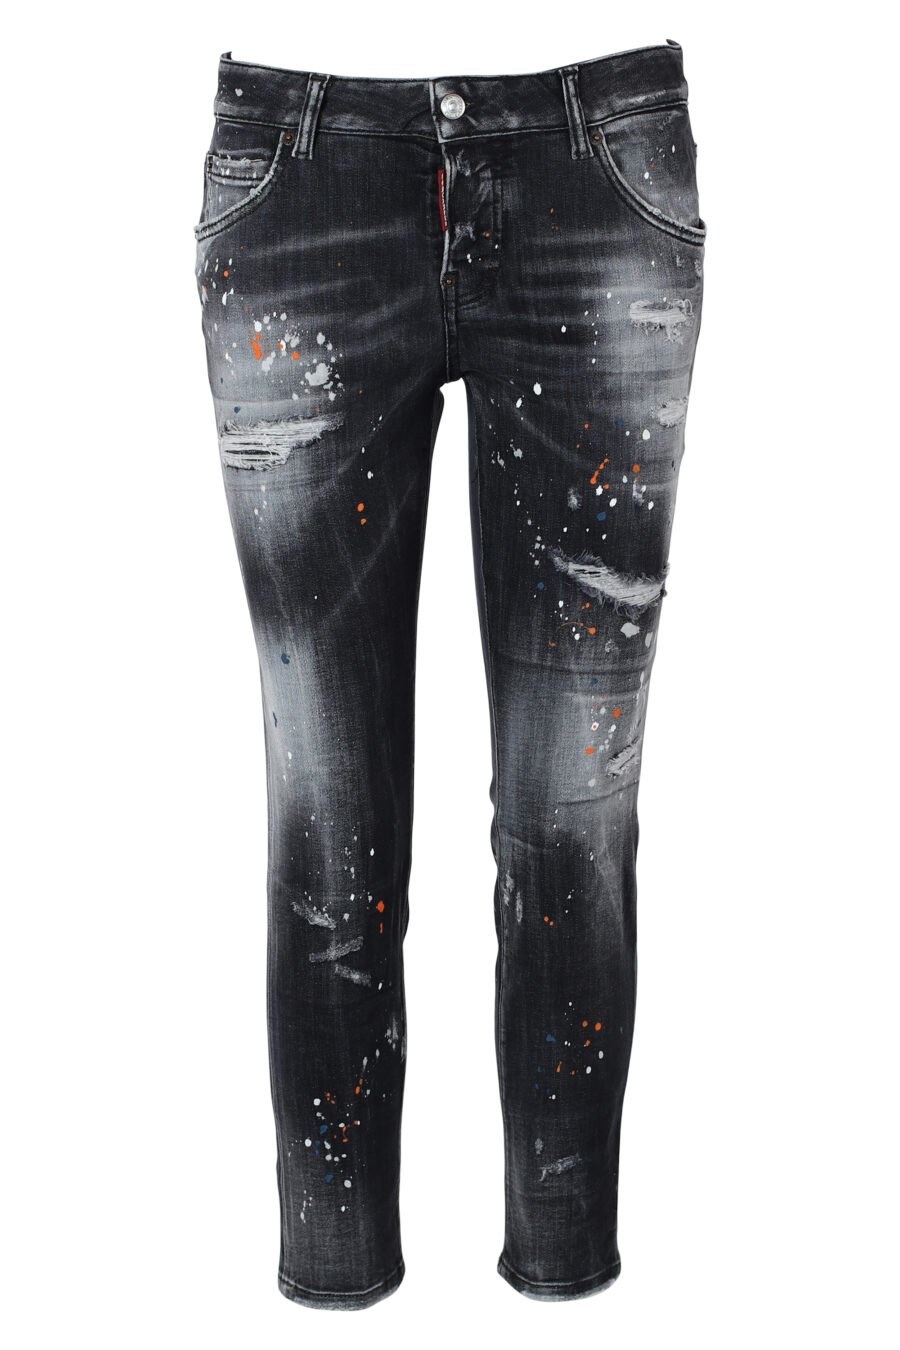 Jeans preto "cool girl" com pintura multicolorida - IMG 9857